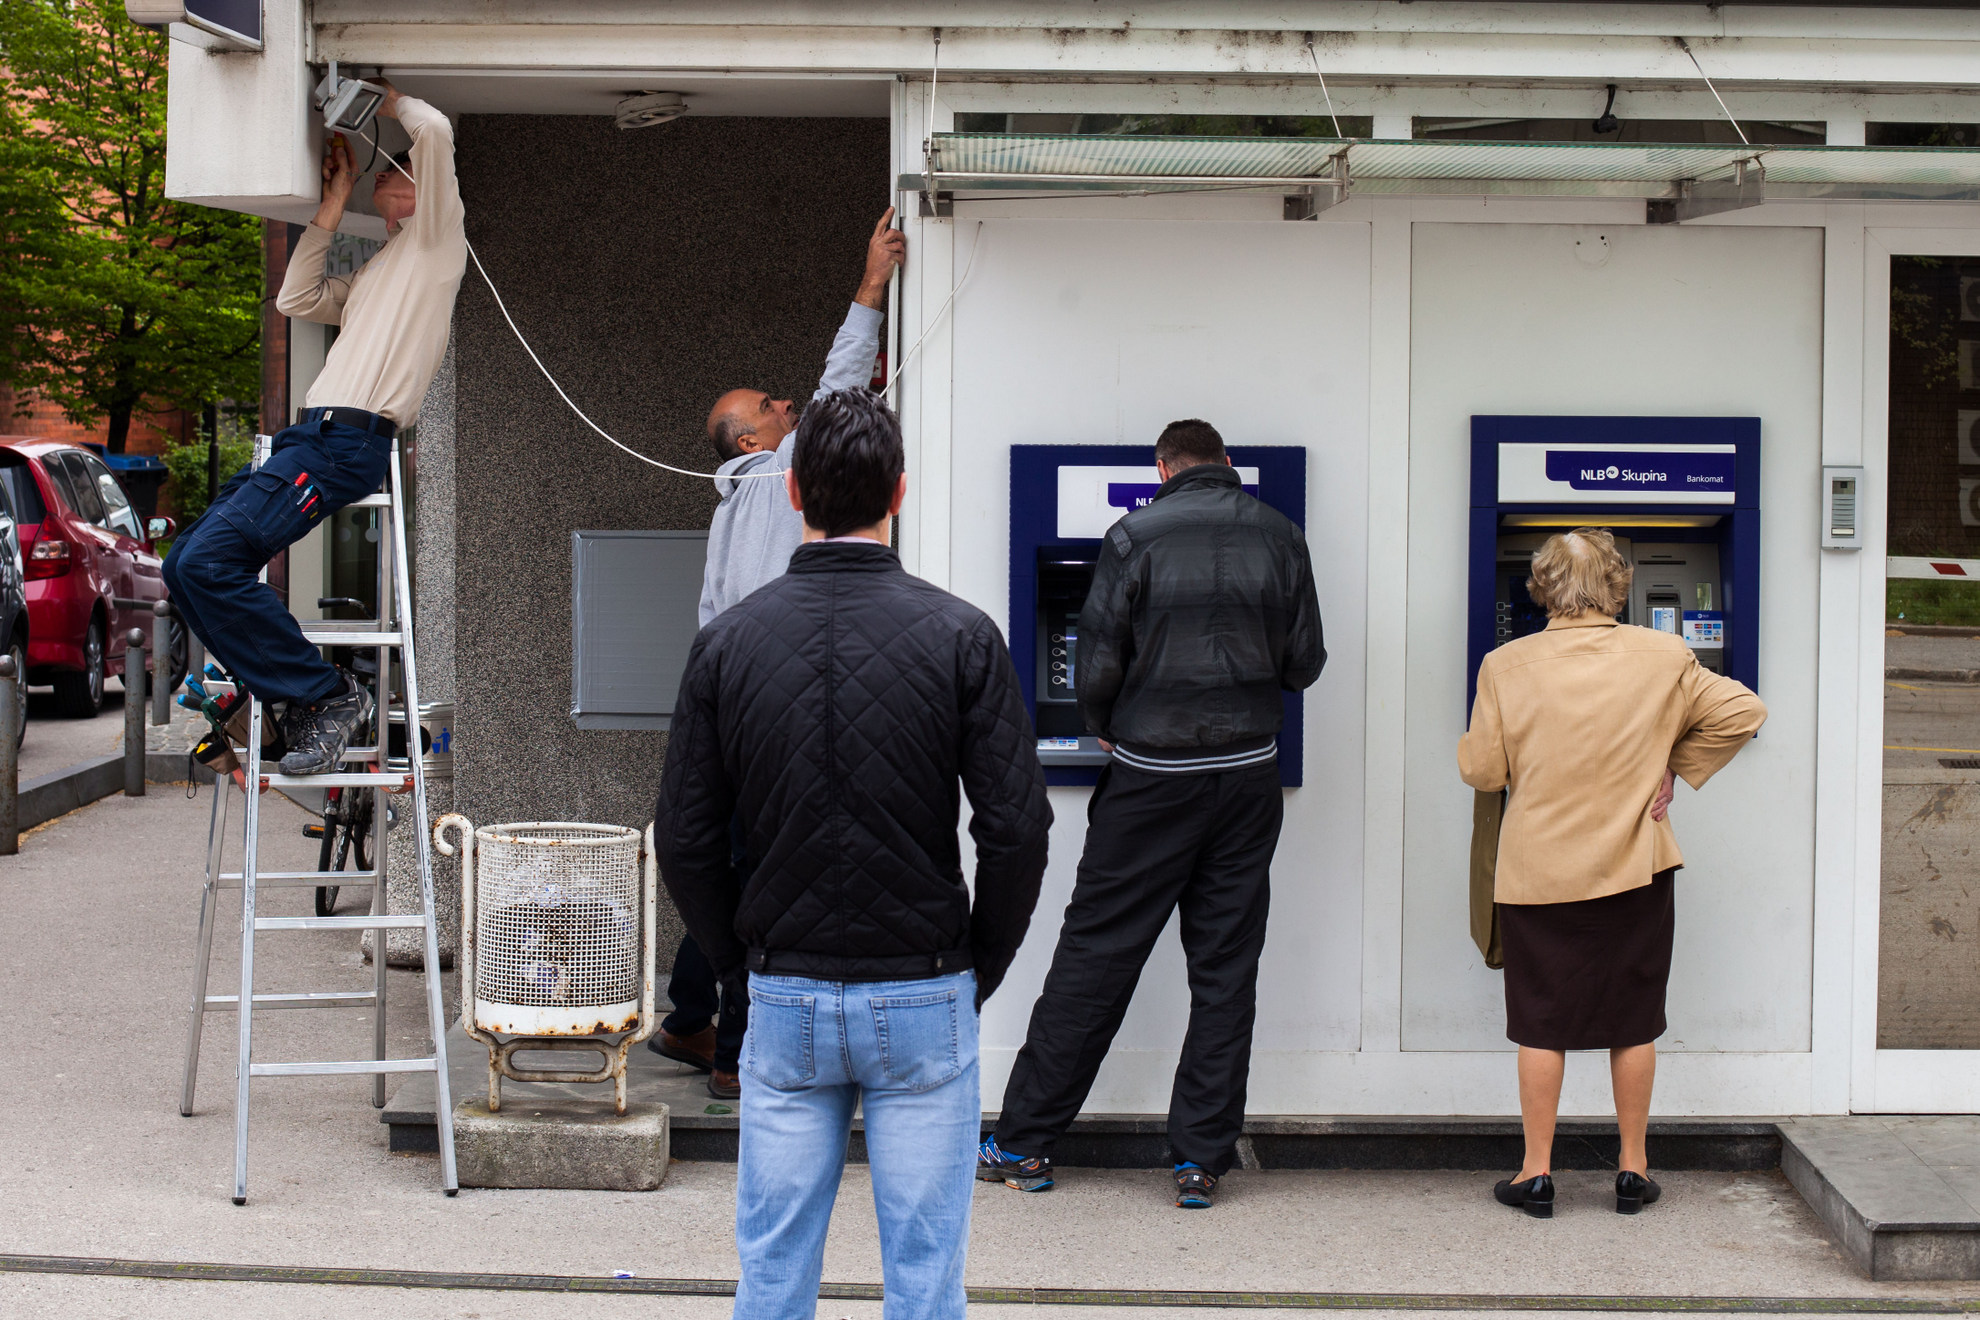 18. 04. 2016 Ljubljana socialna mobilnost. Ljudje čakajo pred bankomatom, medtem ko delavca delata.